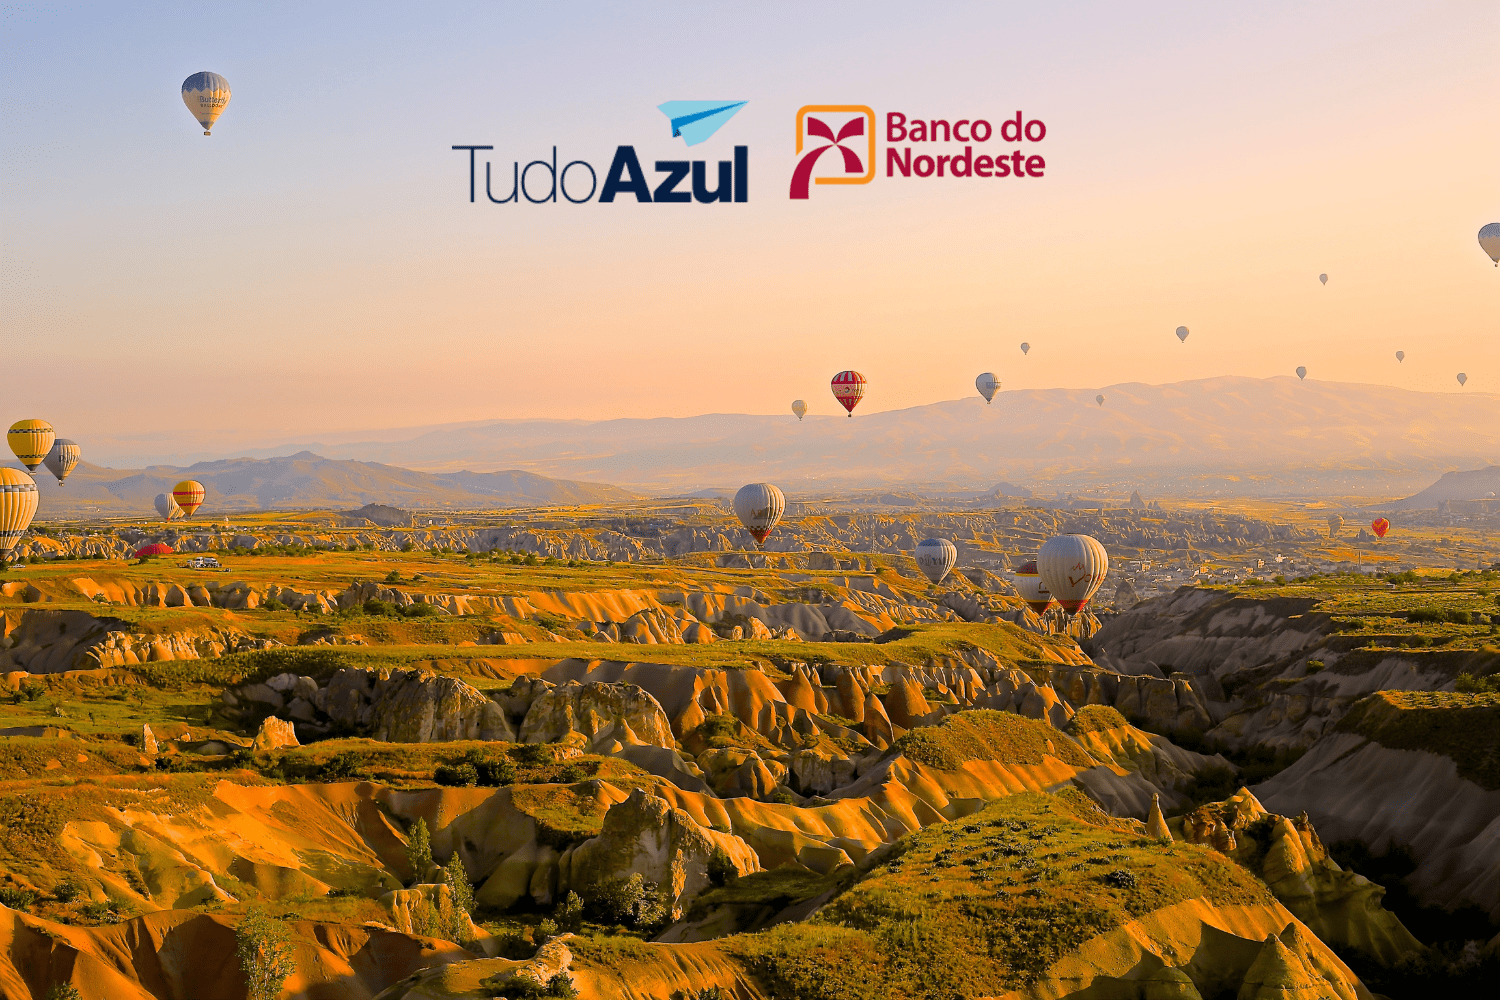 imagem de balões voando com logo TudoAzul e Banco do Nordeste 70% de bônus TudoAzul